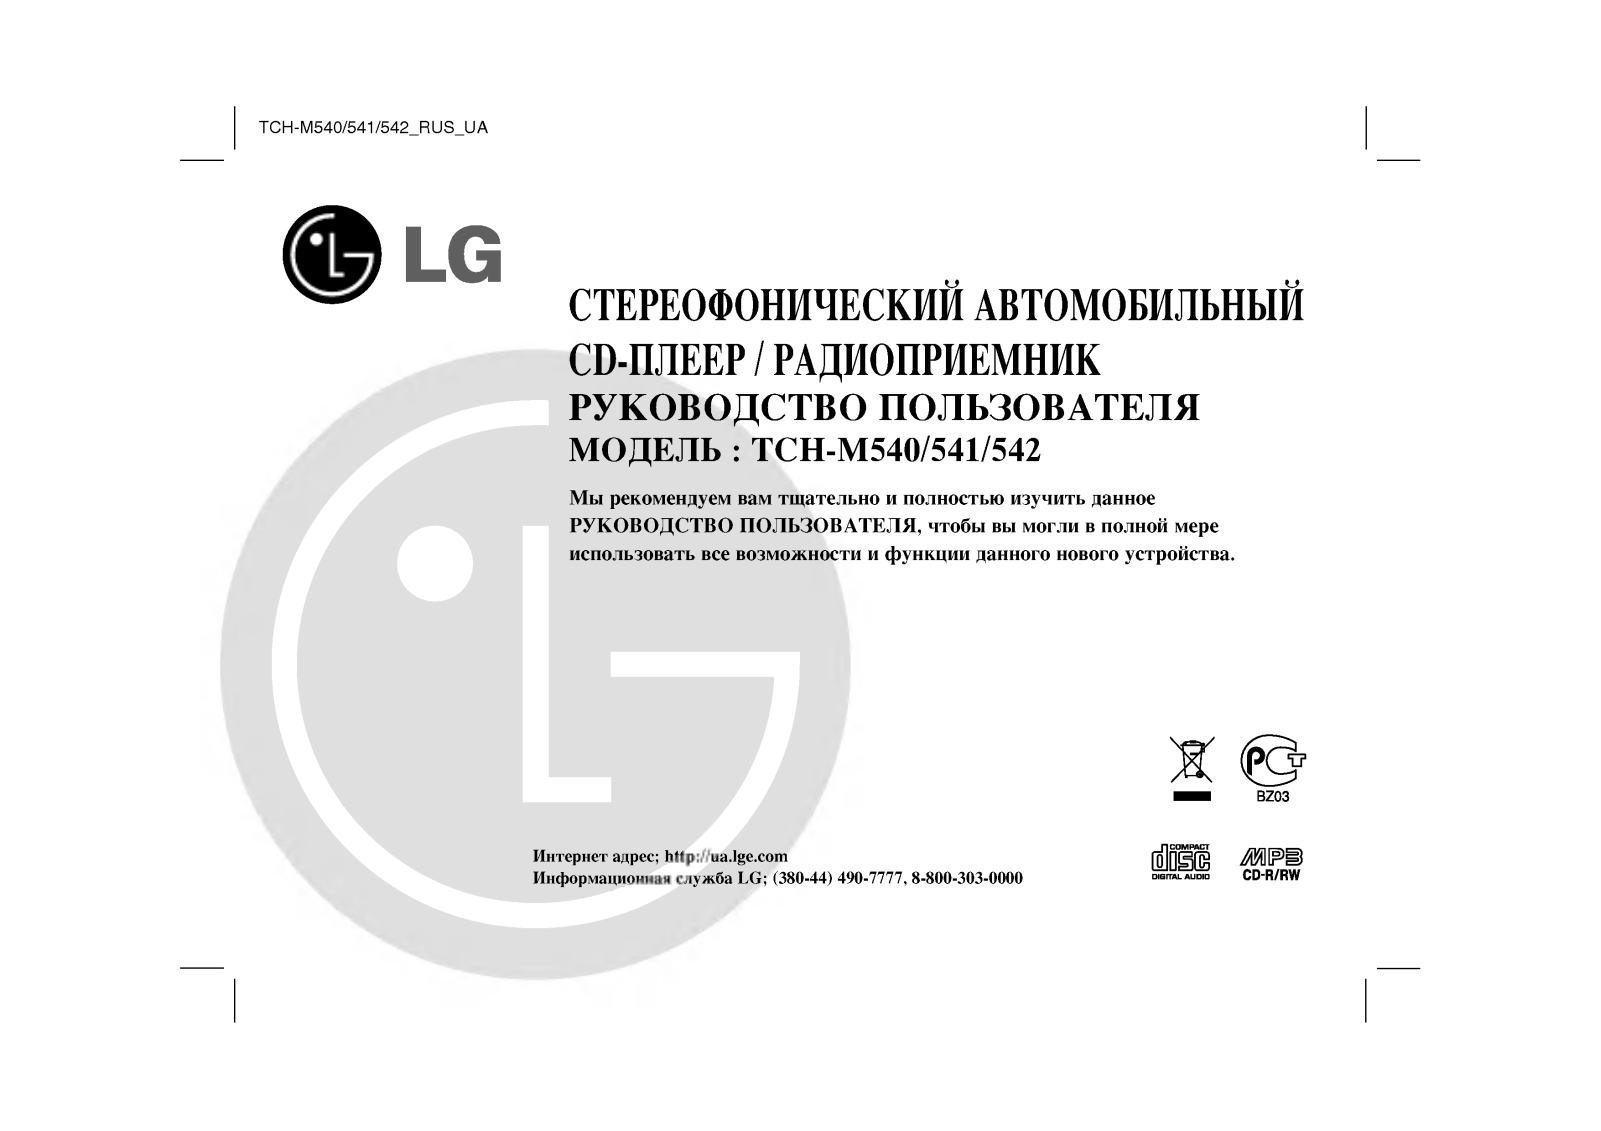 LG TCH-M540, TCH-M541, TCH-M542 User manual